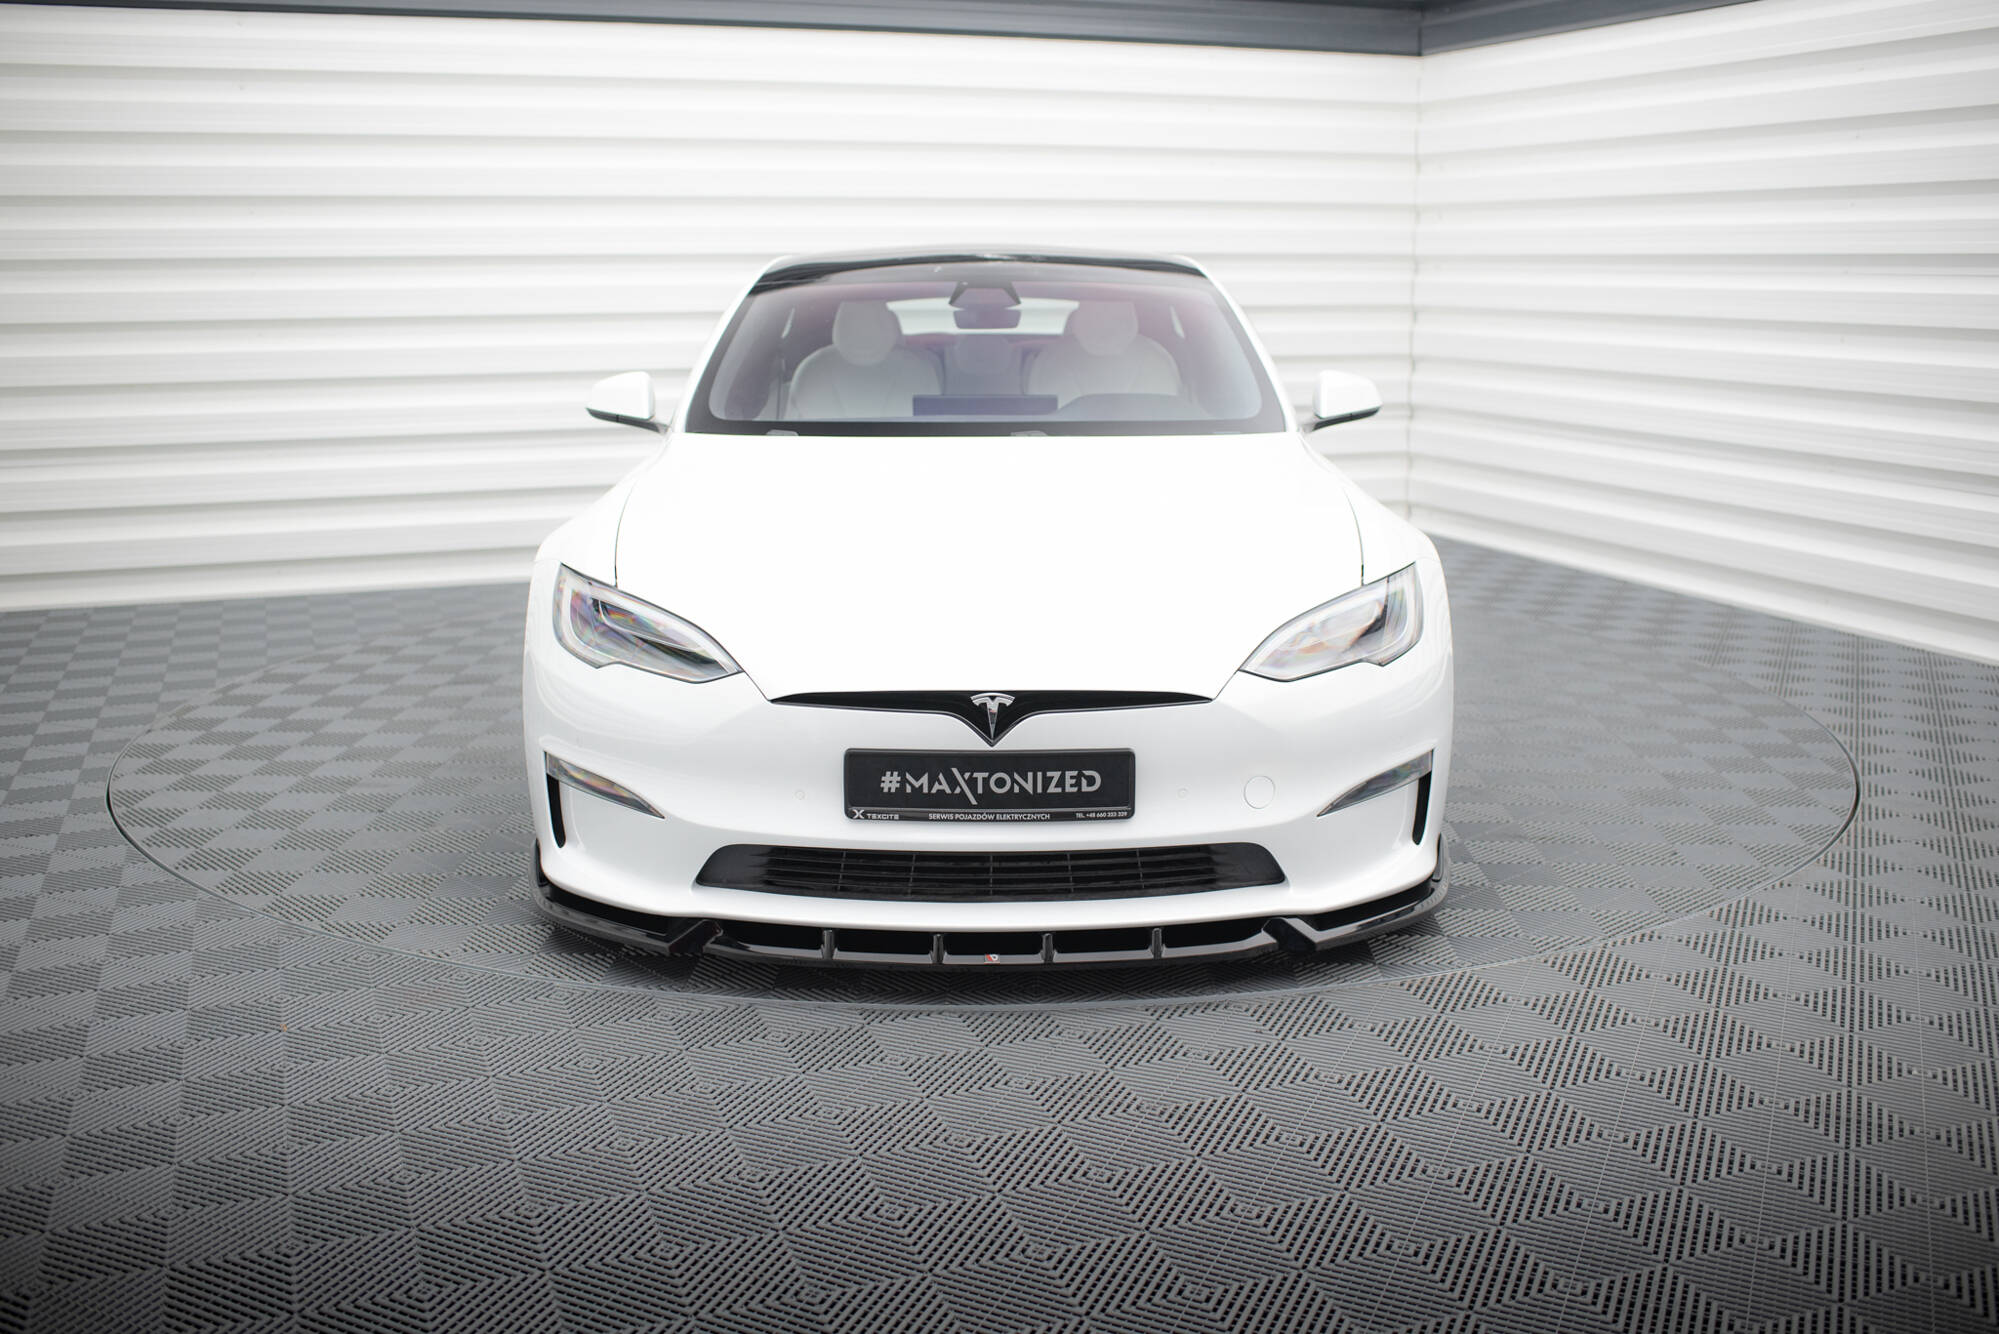 Front Splitter V.1 Tesla Model S Plaid Mk1 Facelift